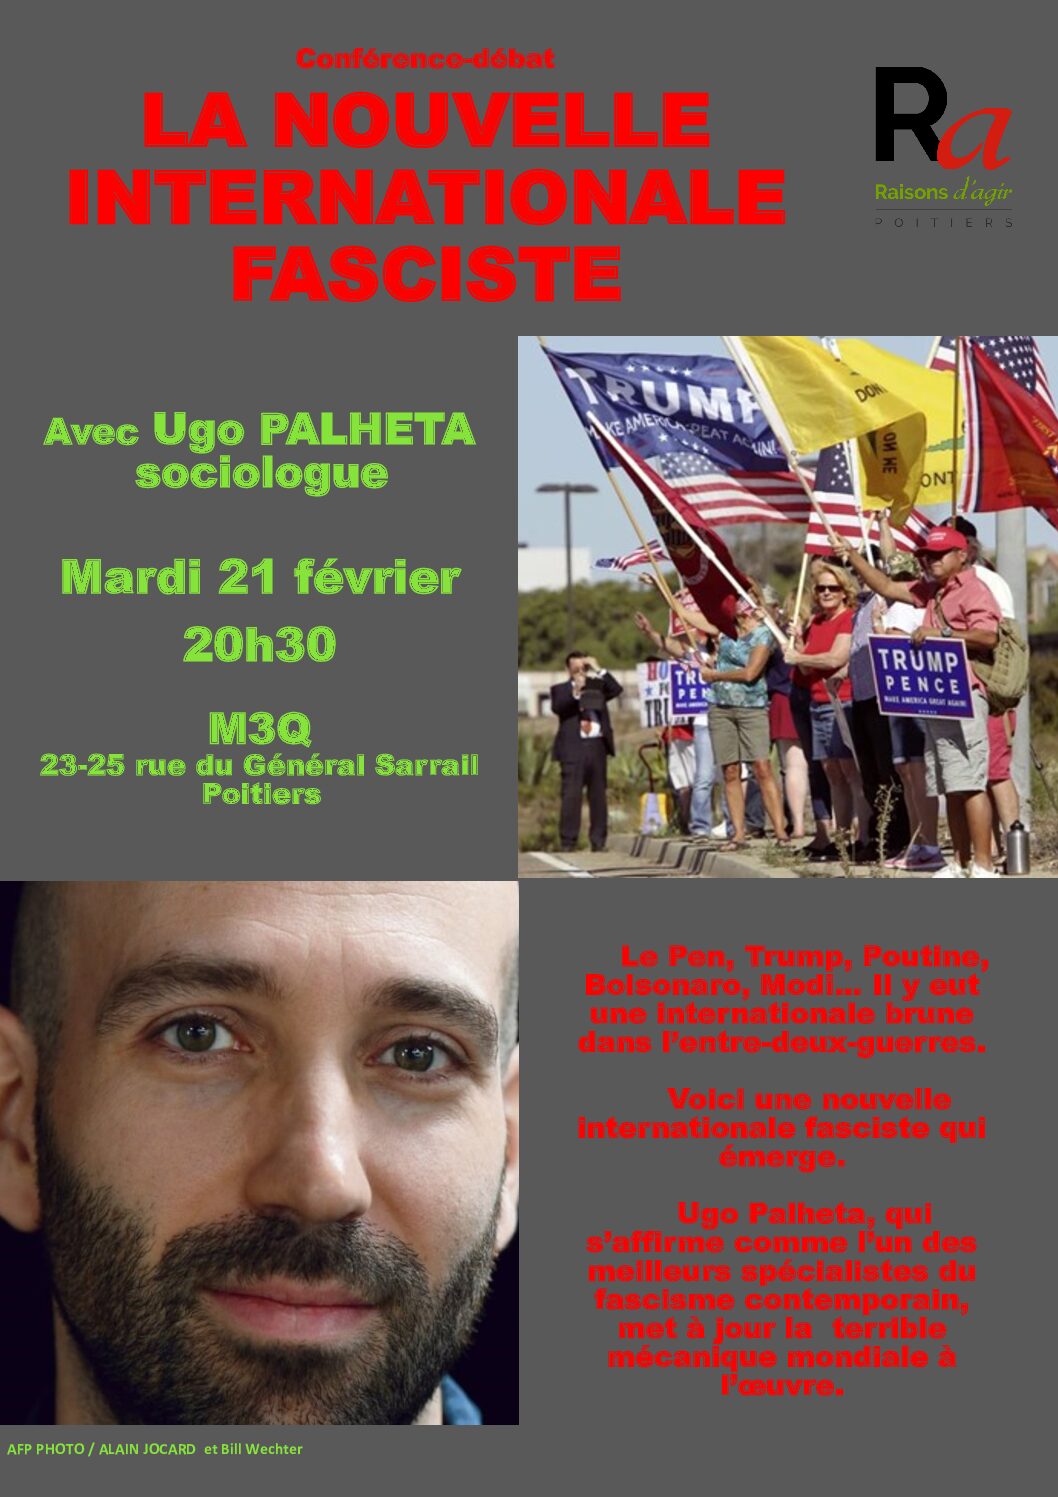 Ugo Palheta, sur « la nouvelle inter­na­tio­nale fasciste », le 21 février, à Poitiers